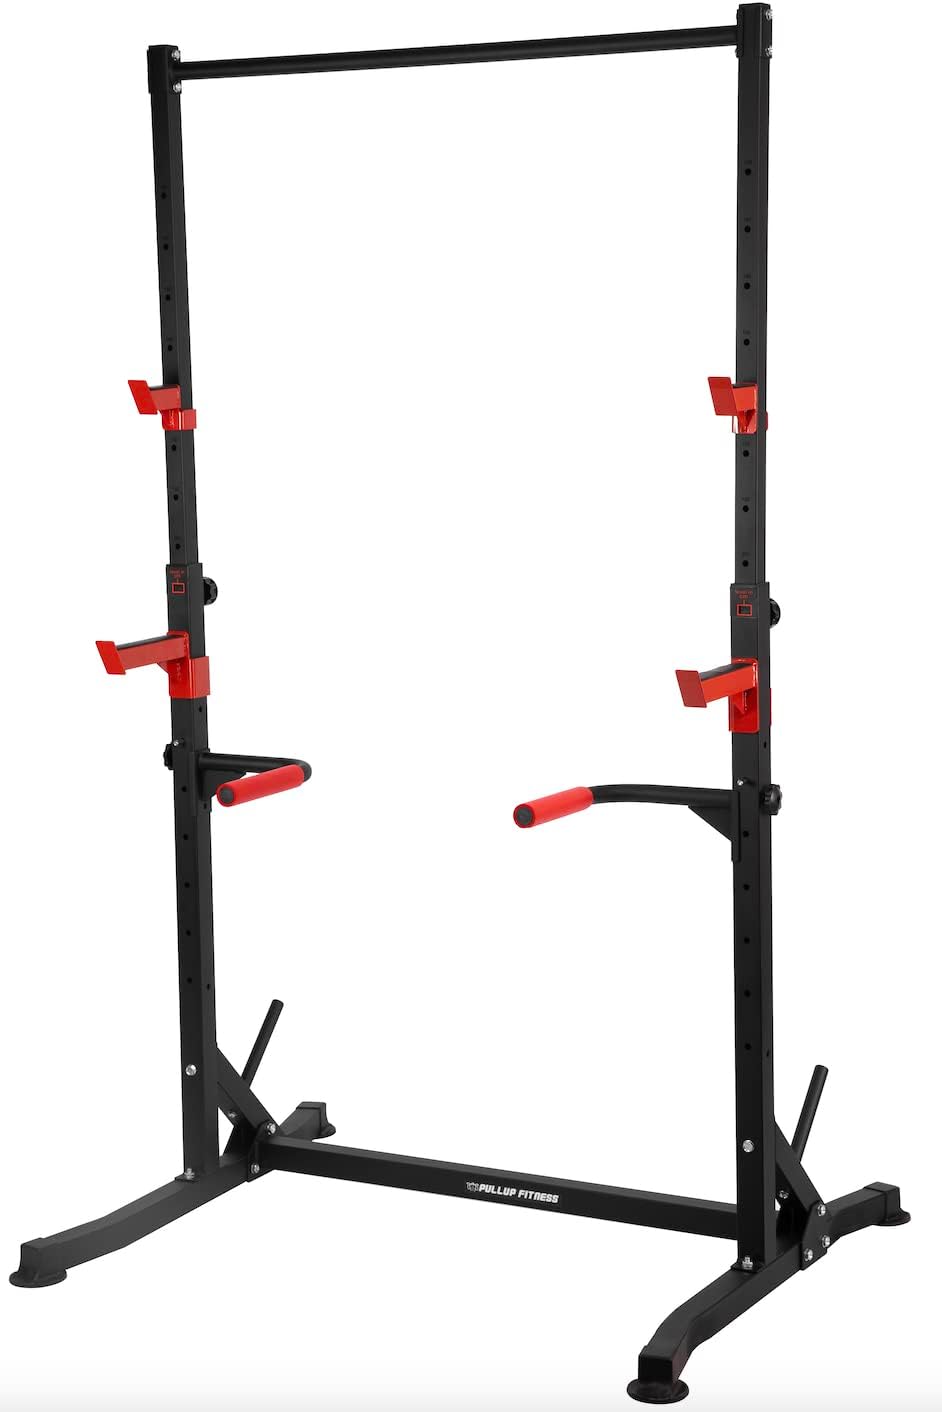 Squat Rack v2/Barre de Traction Ajustable/Barre Fixe/Developper couché/Pull up Bar/Cage à Squat/DIPS BAR, en Métal, noir - fitnessterapy